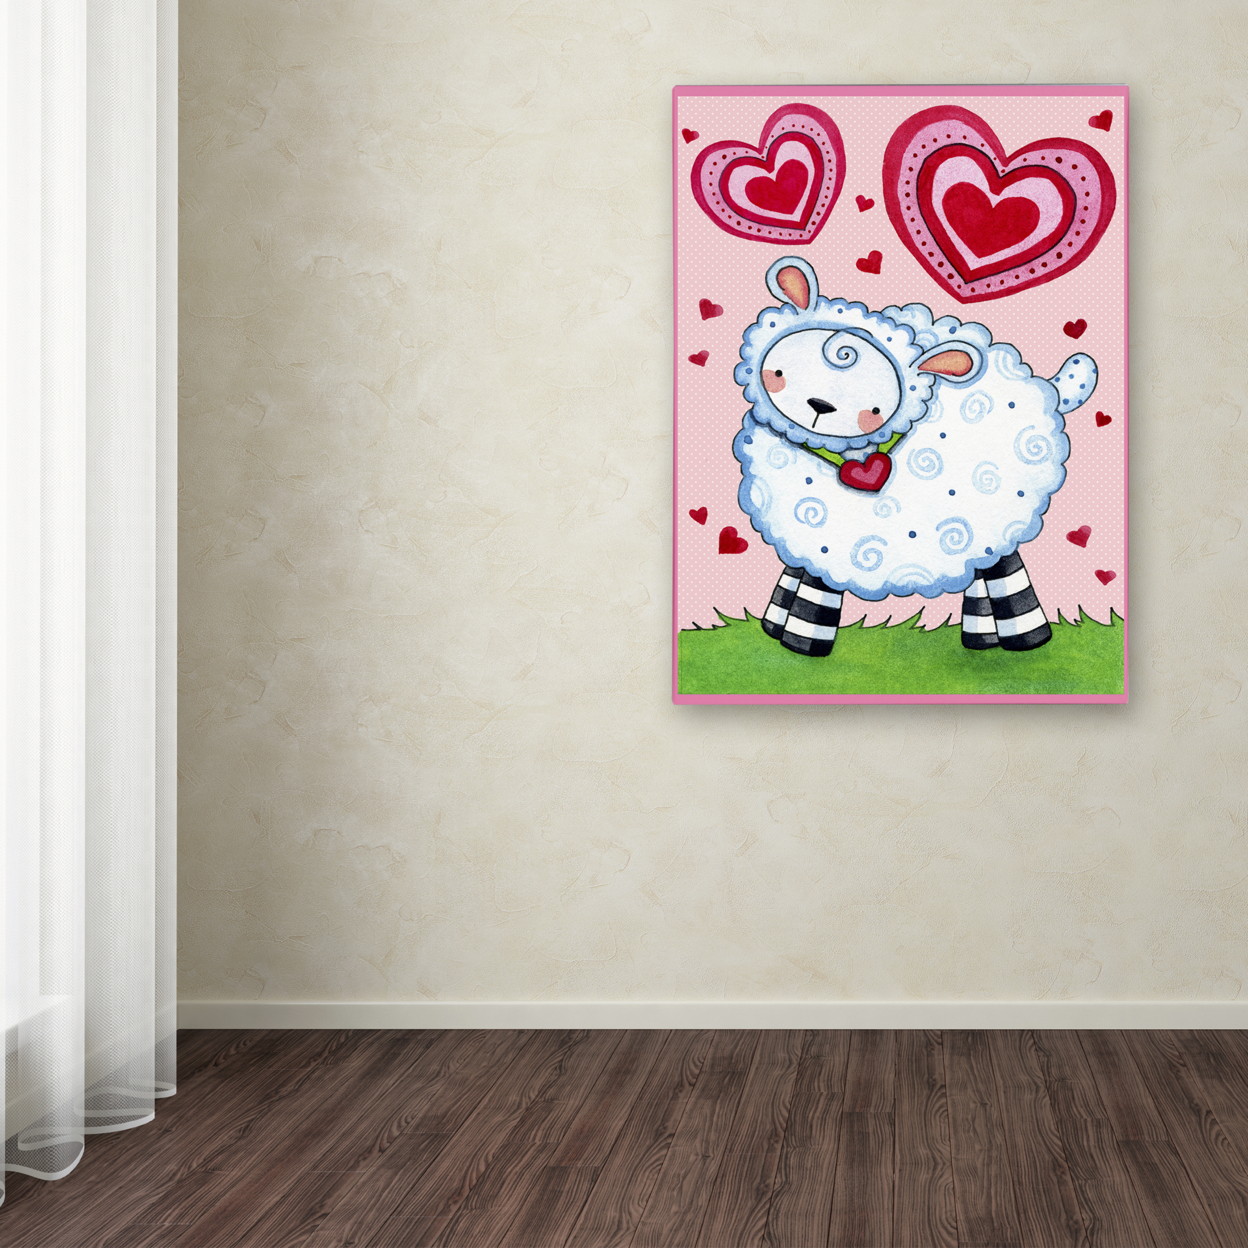 Jennifer Nilsson 'Valentine Lamb' Canvas Wall Art 35 X 47 Inches